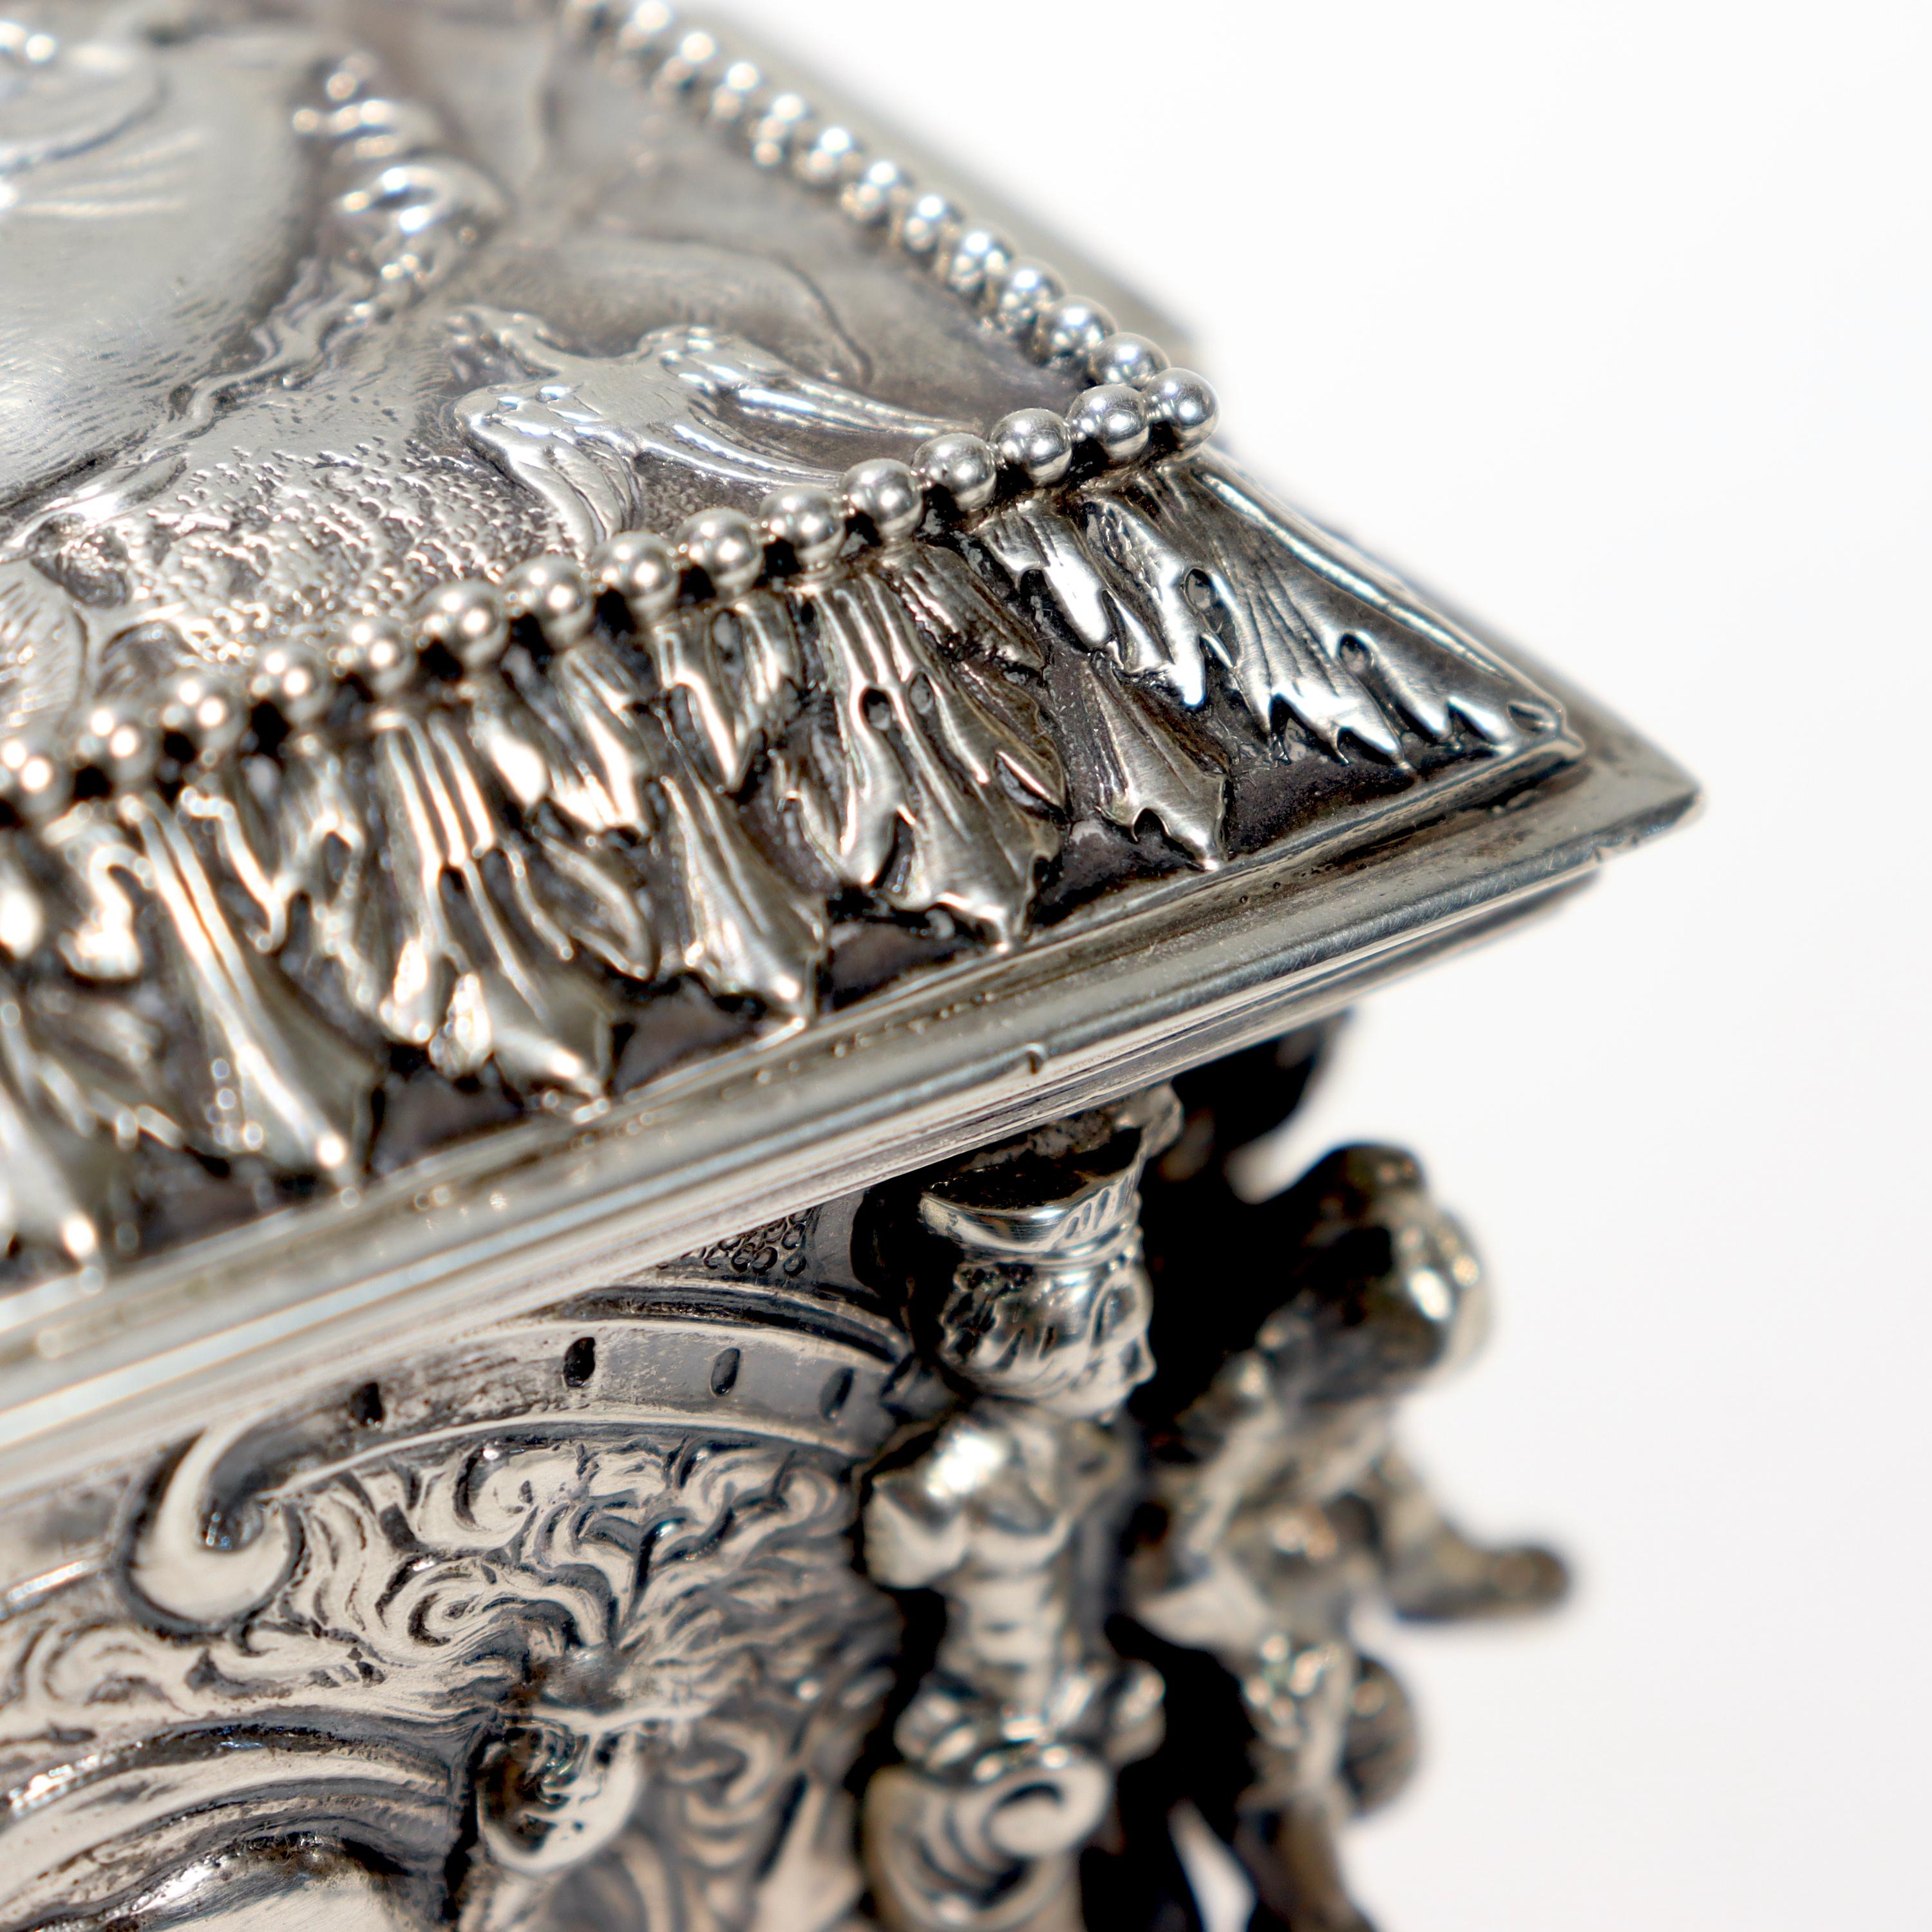 Antique German Figural Renaissance Revival Solid Silver Table Box or Casket For Sale 13